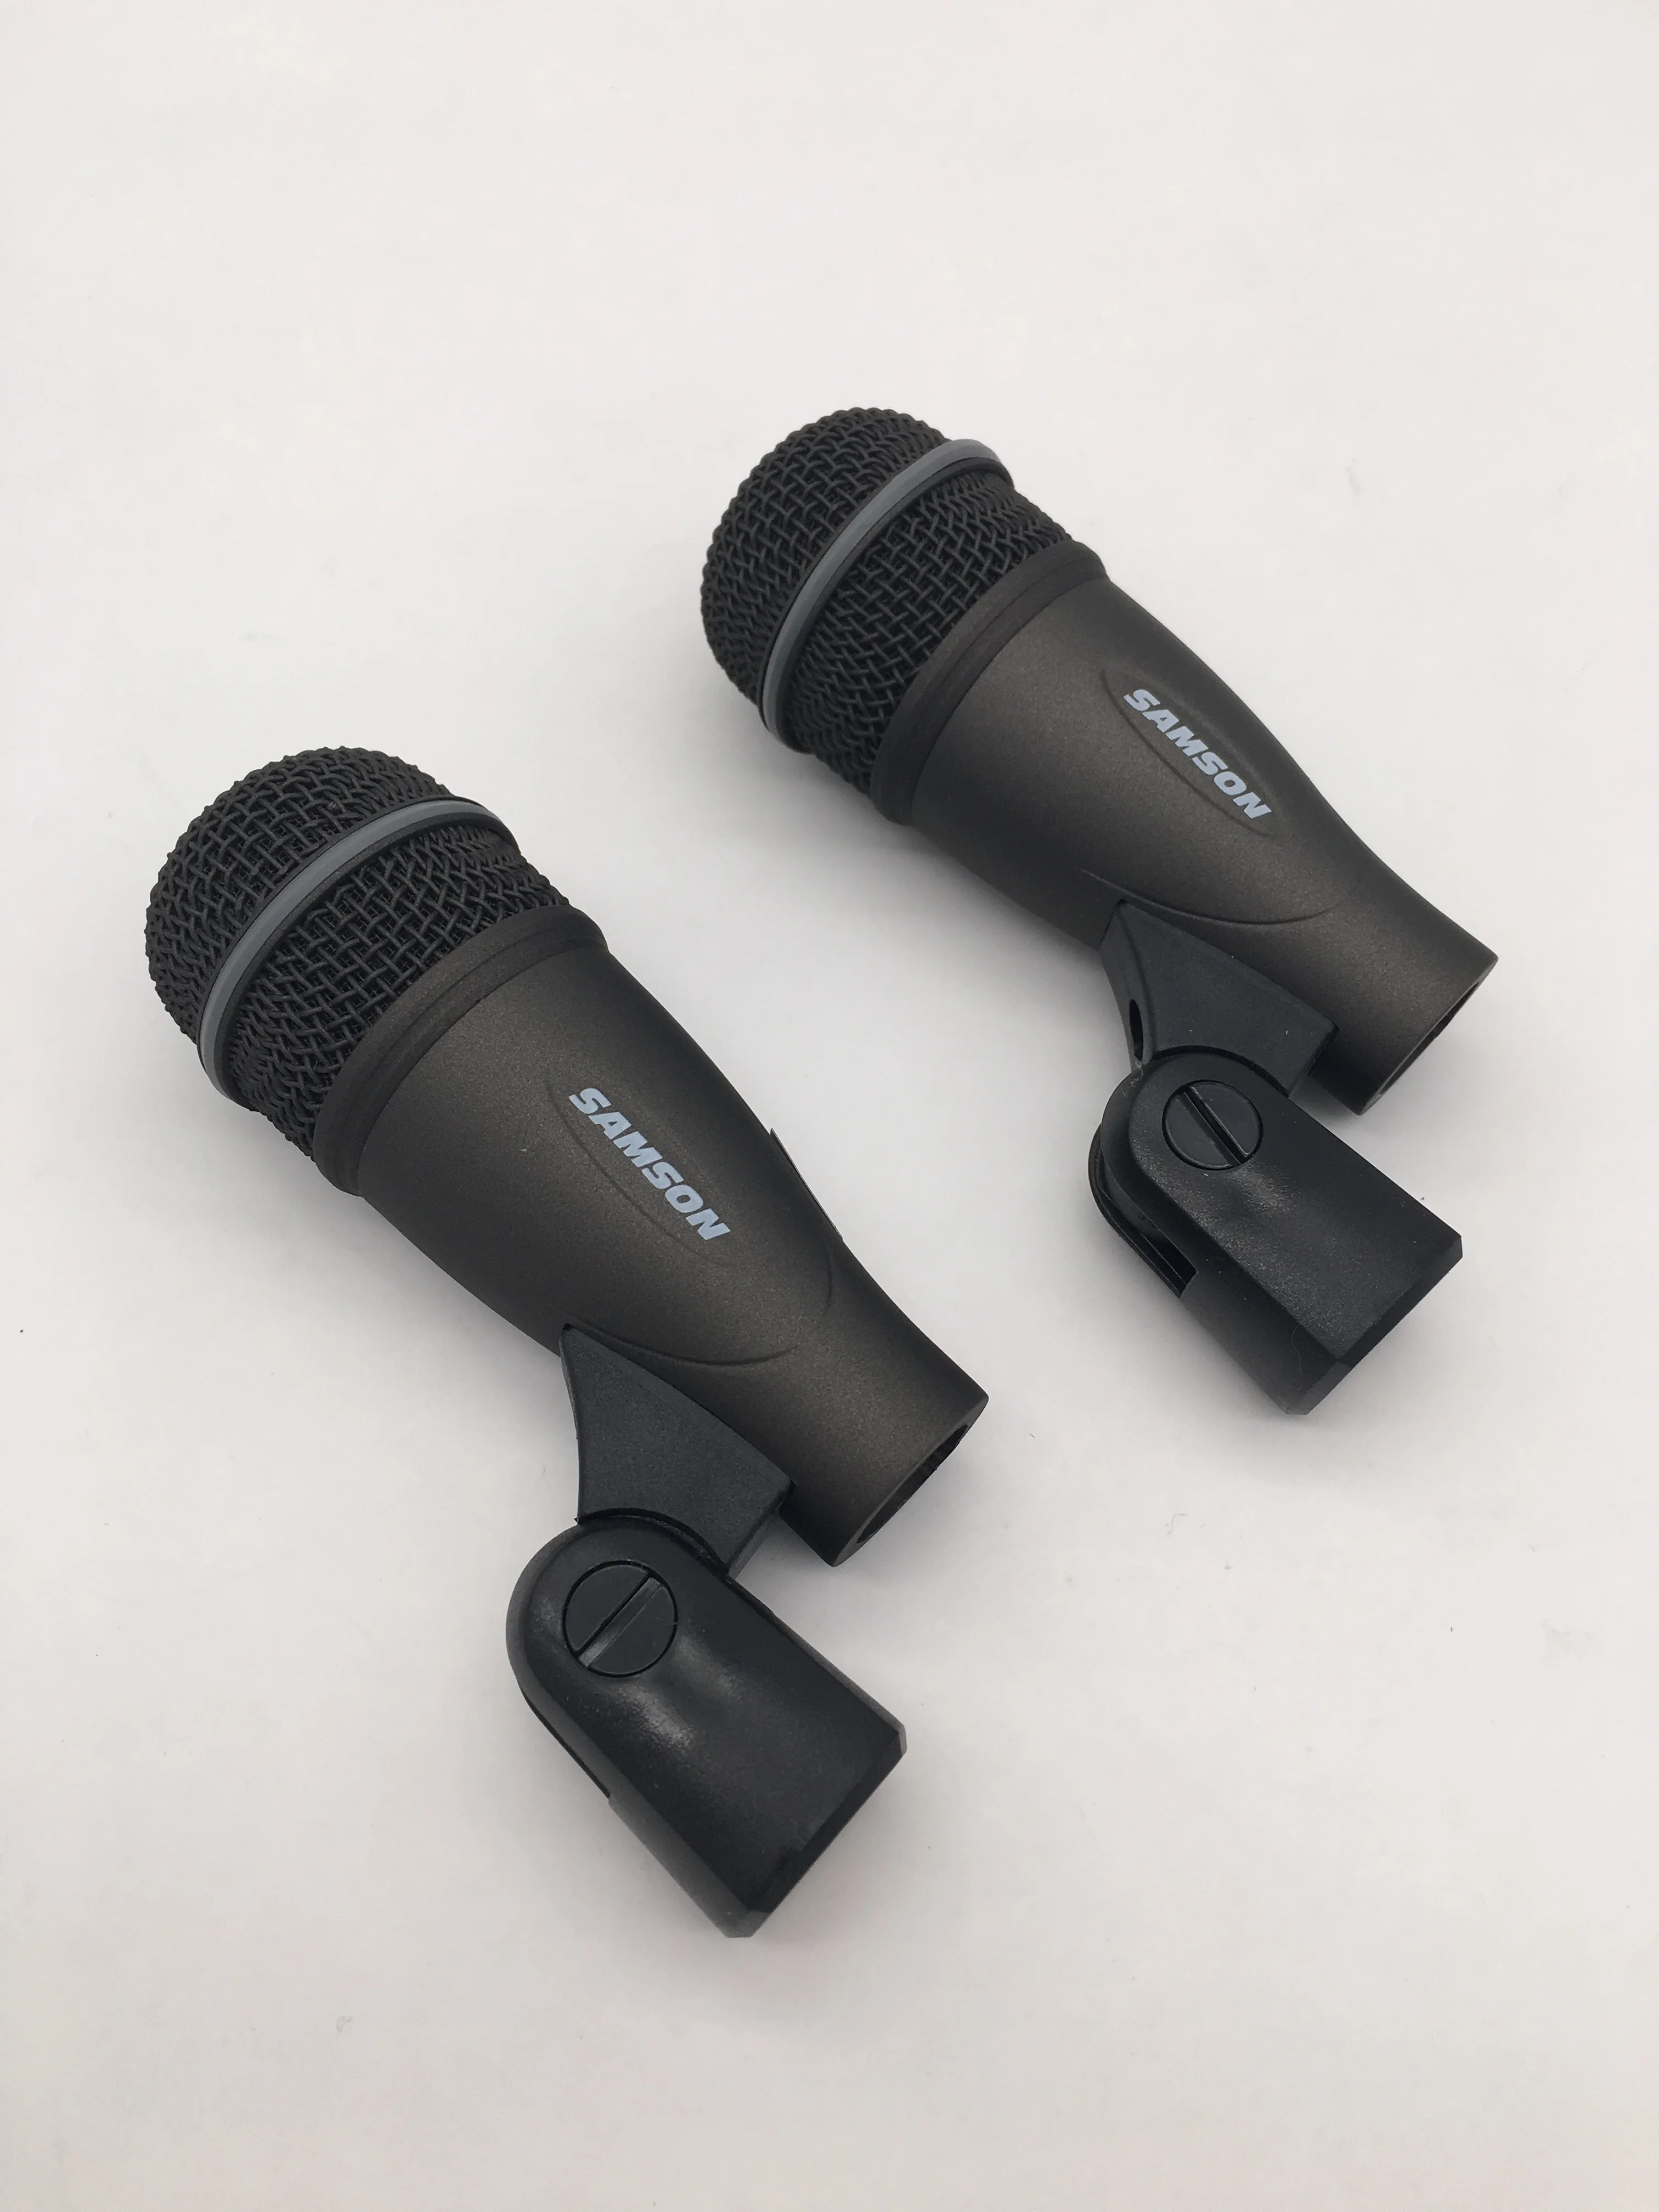 SAMSON DK707 7 шт барабанный микрофон комплект барабанный микрофон набор инструмент Запись конденсаторный микрофон включает Q71, Q72 и C02 микрофоны